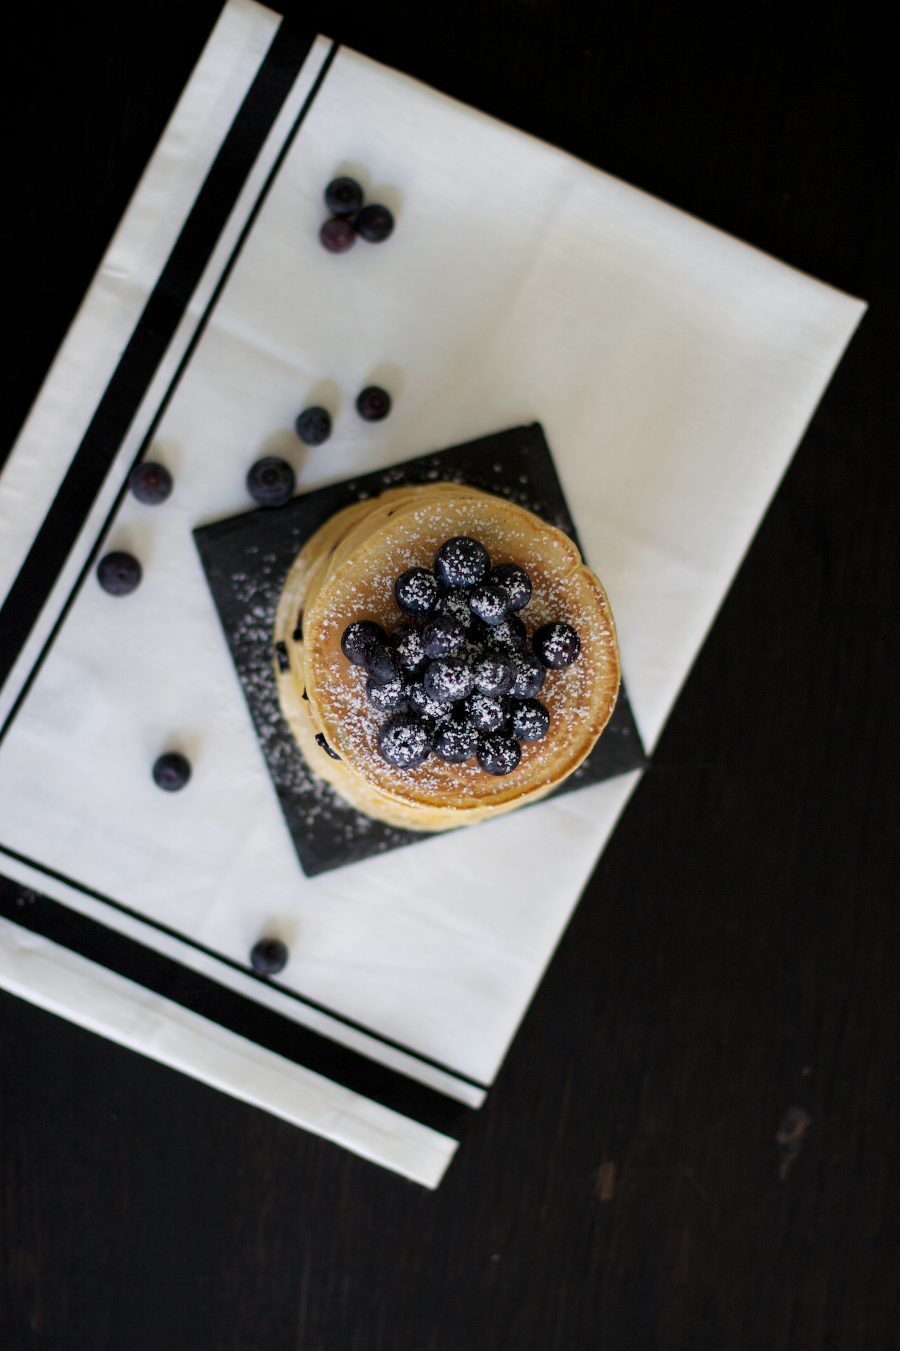 Blueberry Pancakes Recipe The Dashing Rider